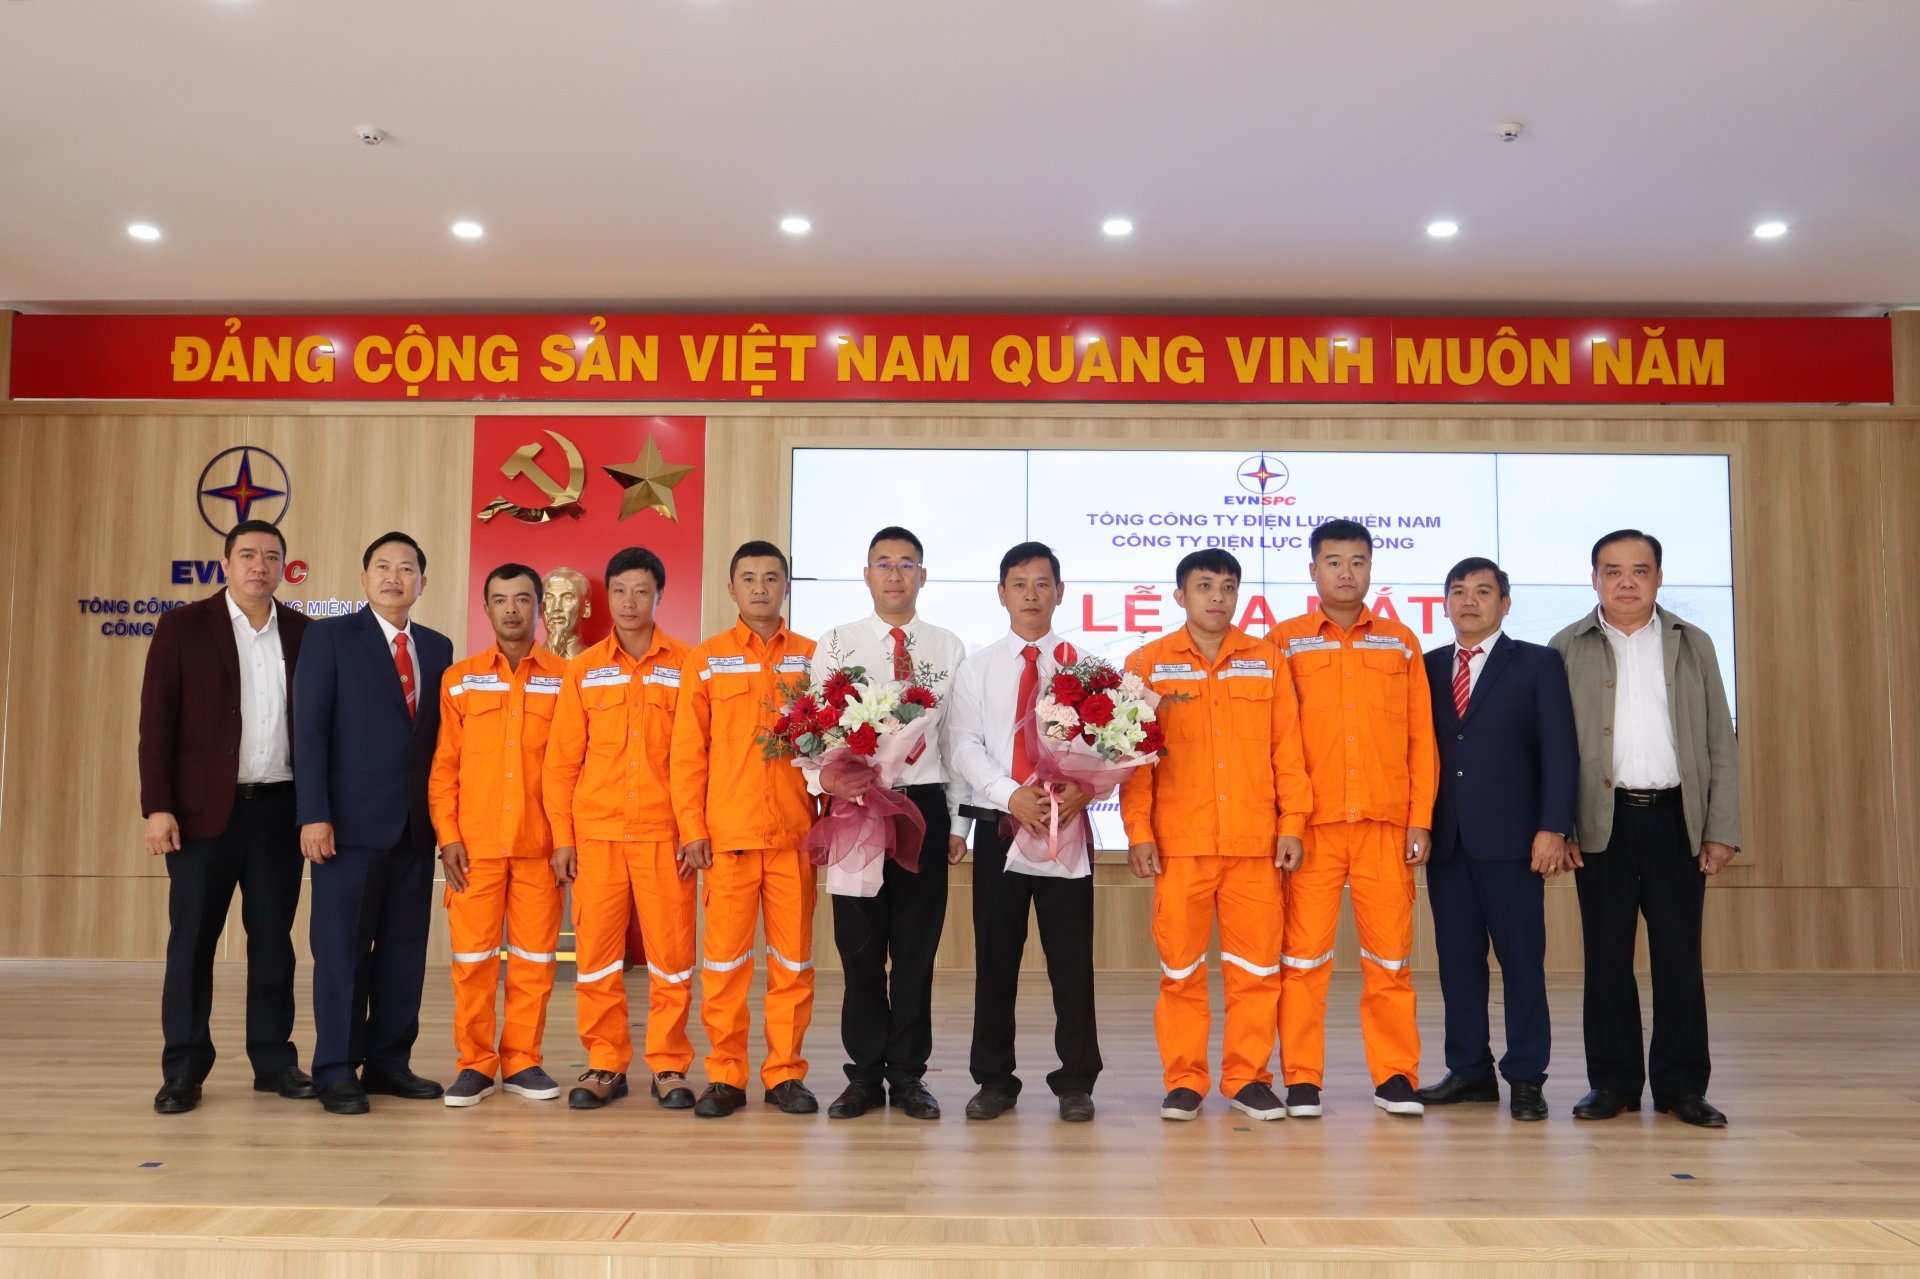 Công ty Điện lực Lâm Đồng ra mắt Đội thi công sửa chữa điện nóng